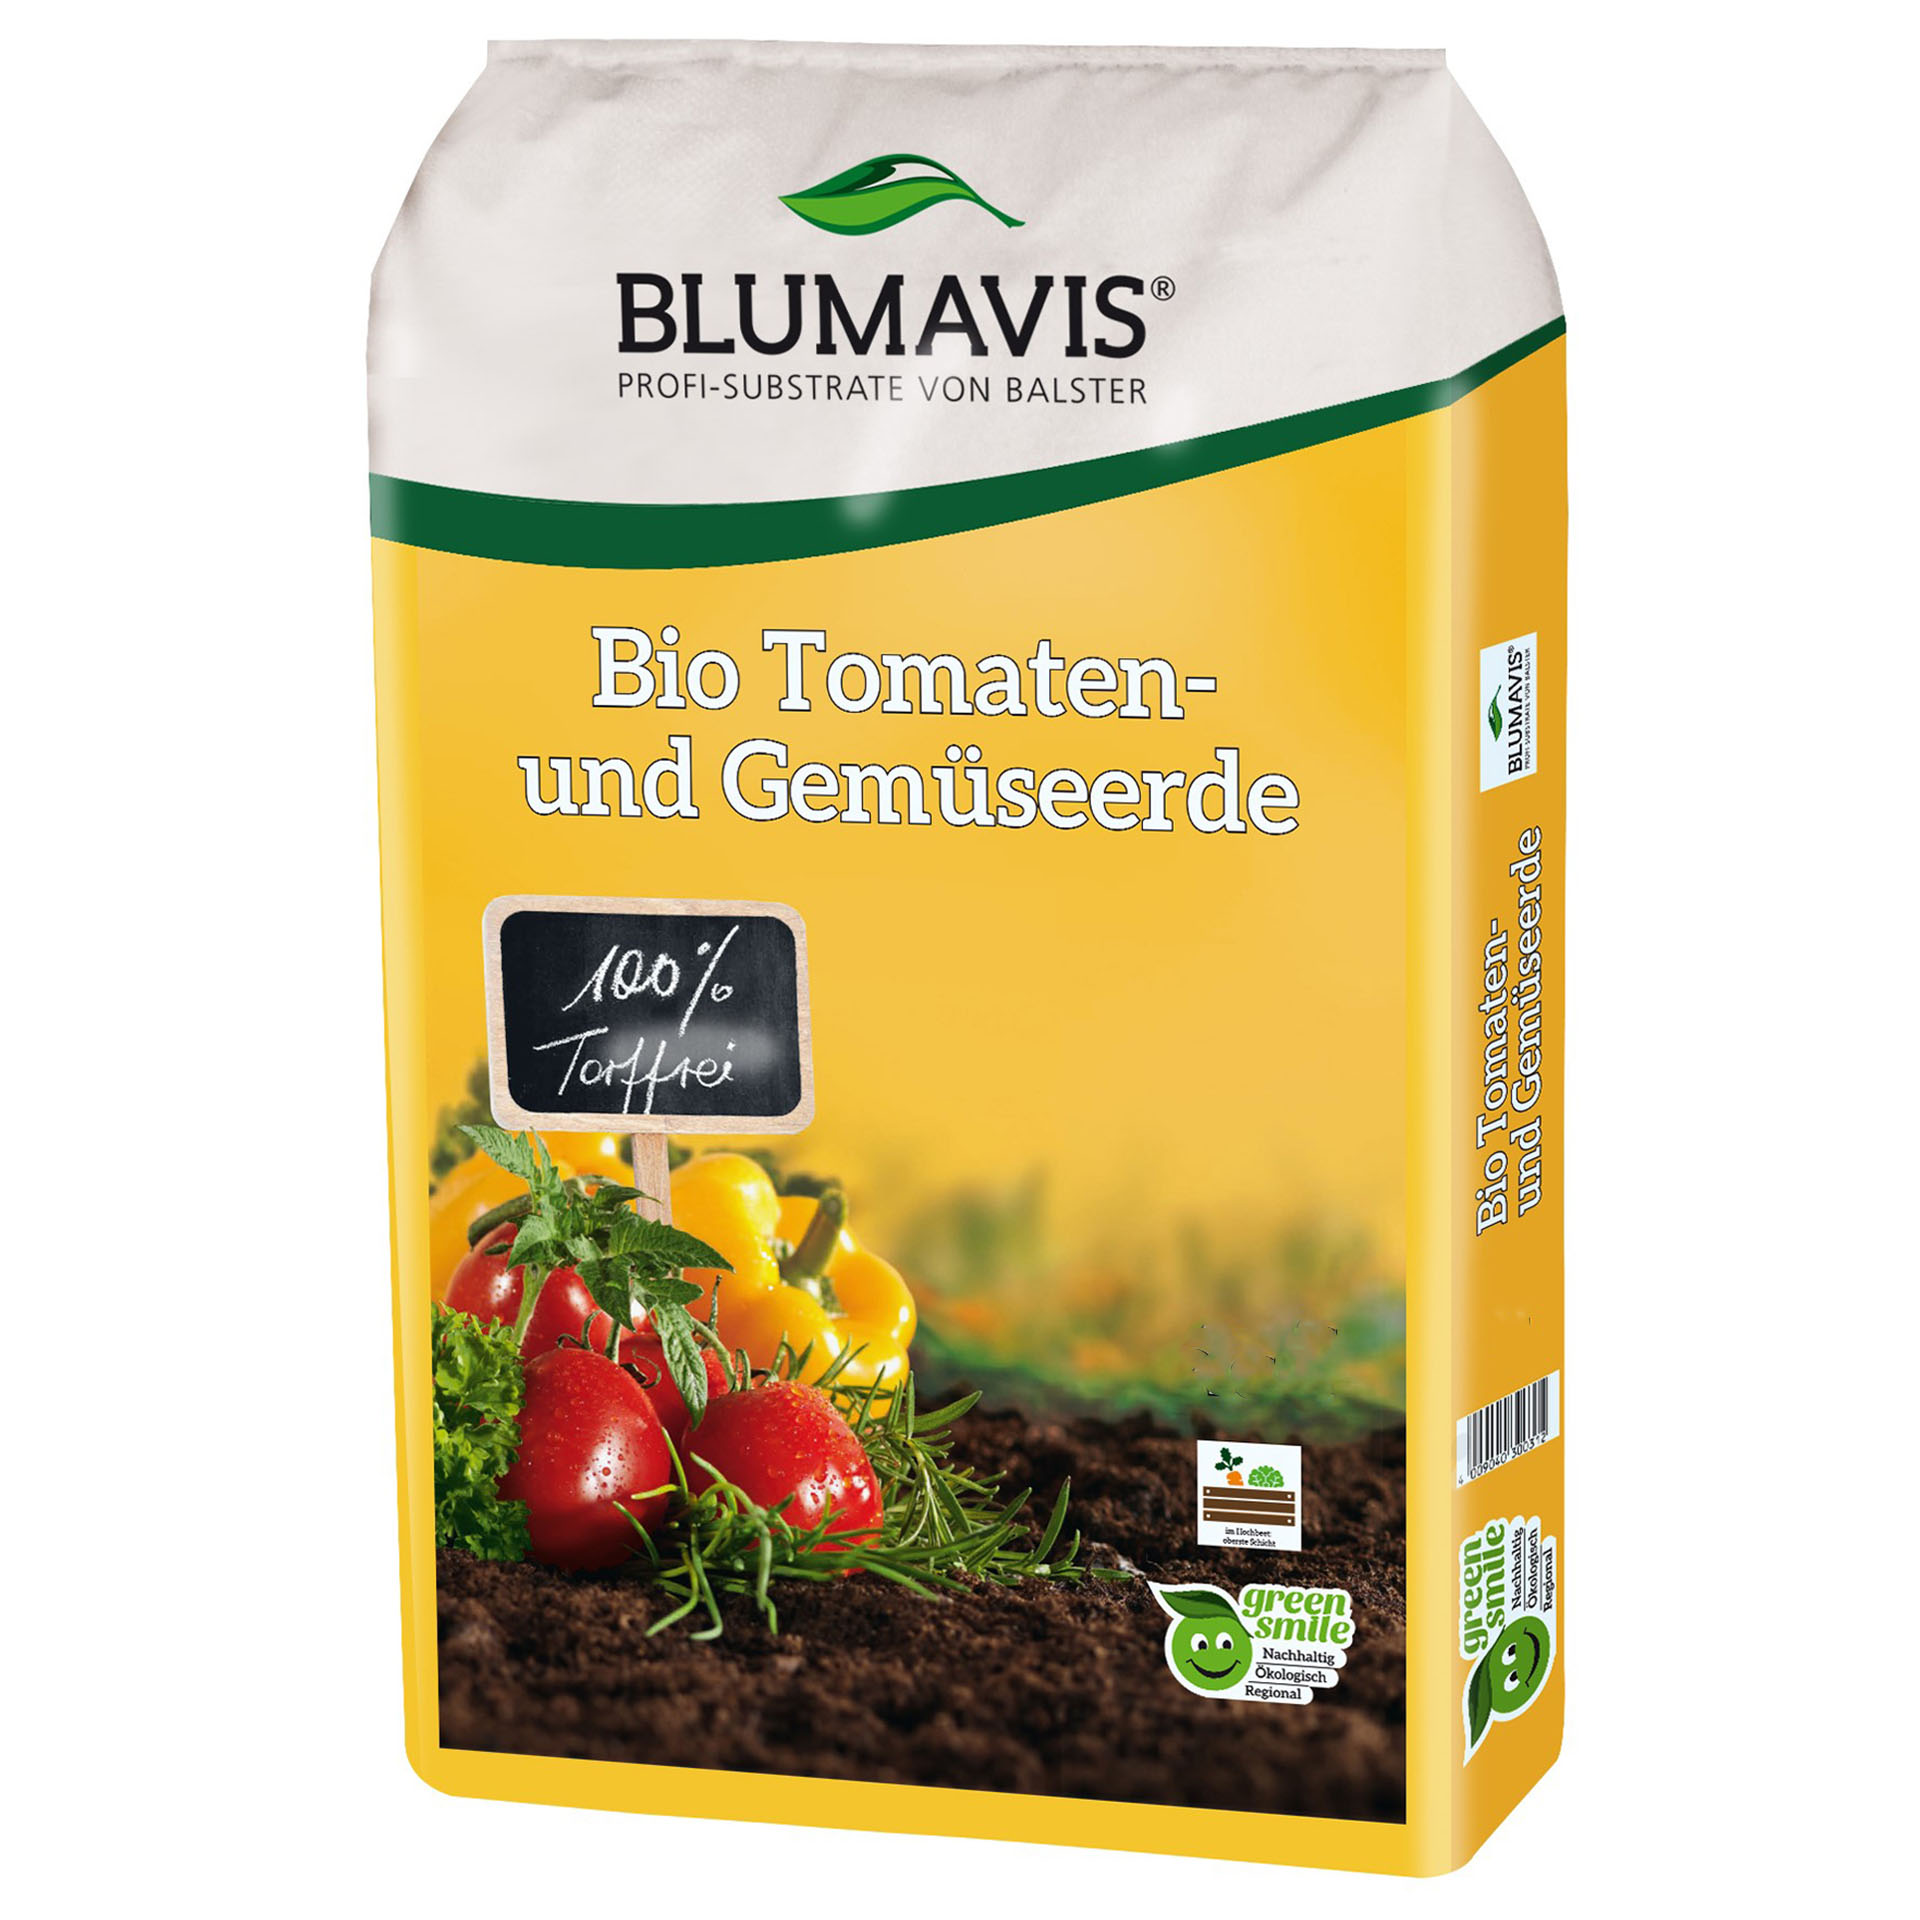 Blumavis® BIO Tomaten- und Gemüseerde torffrei, 40l